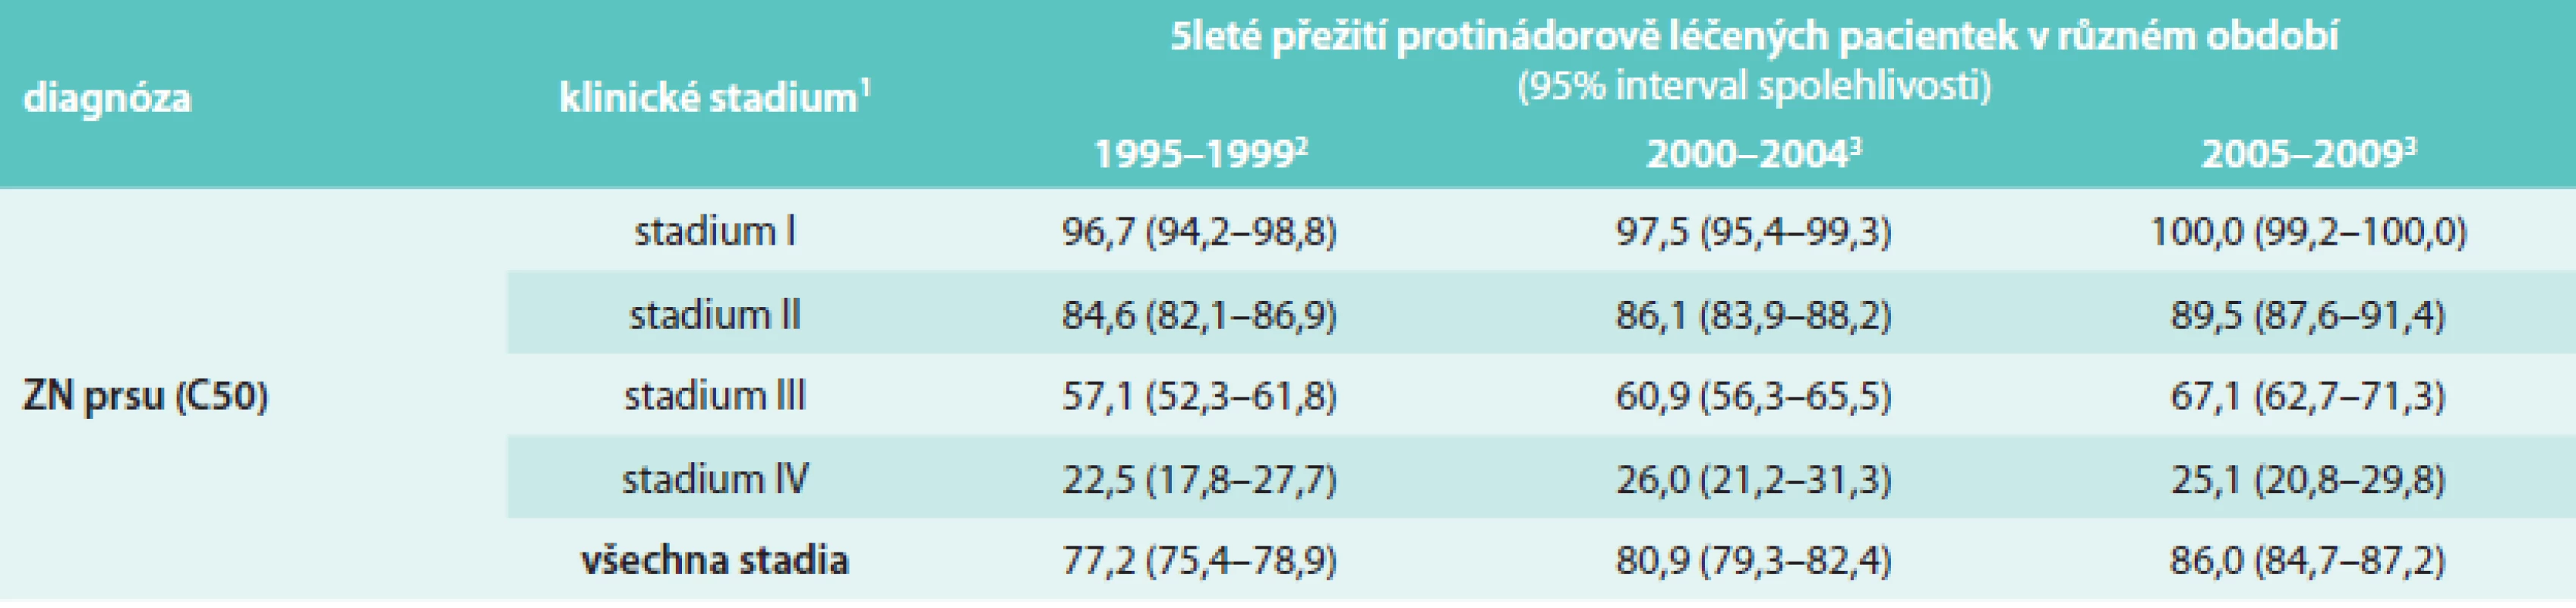 Vývoj hodnoty 5letého relativního přežití pacientek se zhoubným novotvarem prsu v ČR (zdroj dat: Národní onkologický registr ČR)